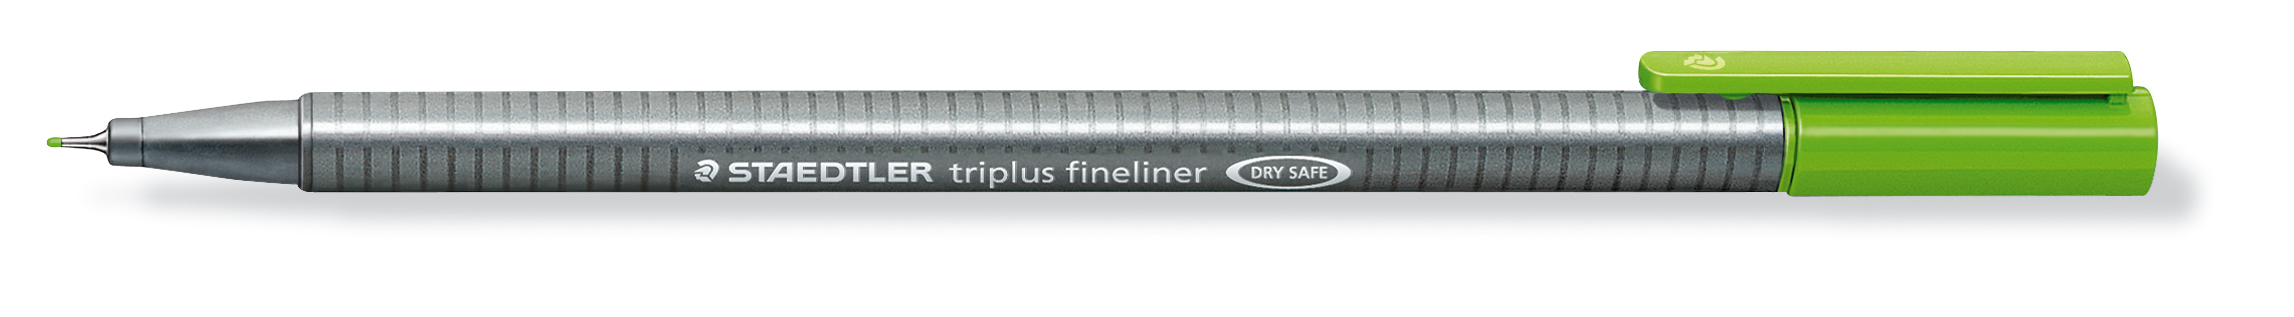 STAEDTLER Triplus Fineliner 0,3mm 334-51 jaune/vert jaune/vert